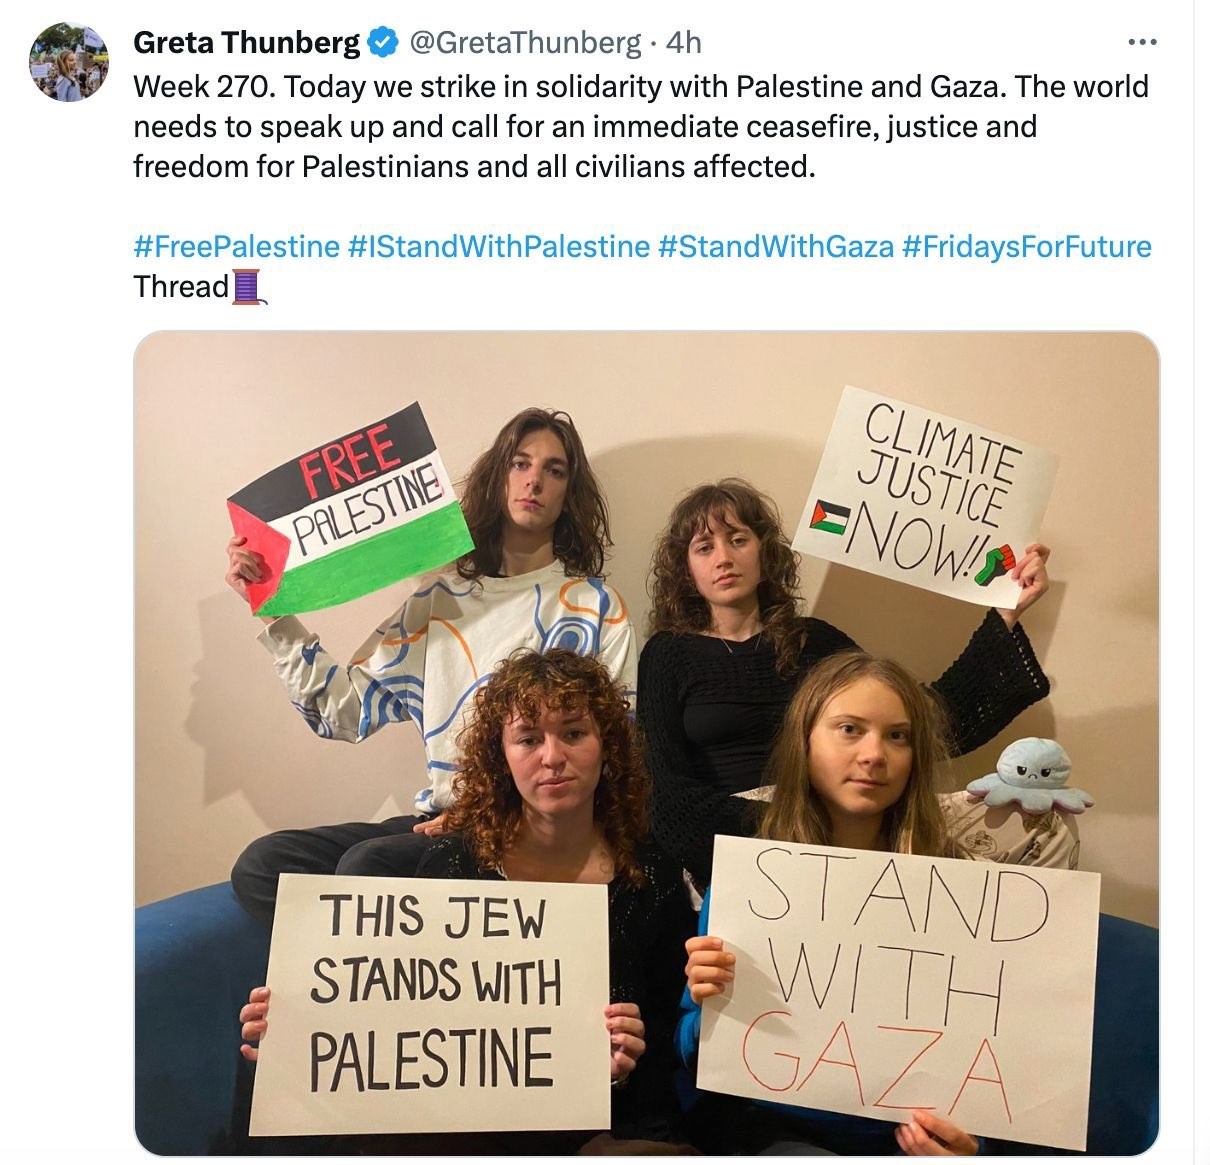 Greta Thunbergin julkaisema kuva aiheutti kritiikkiä antisemitismistä.